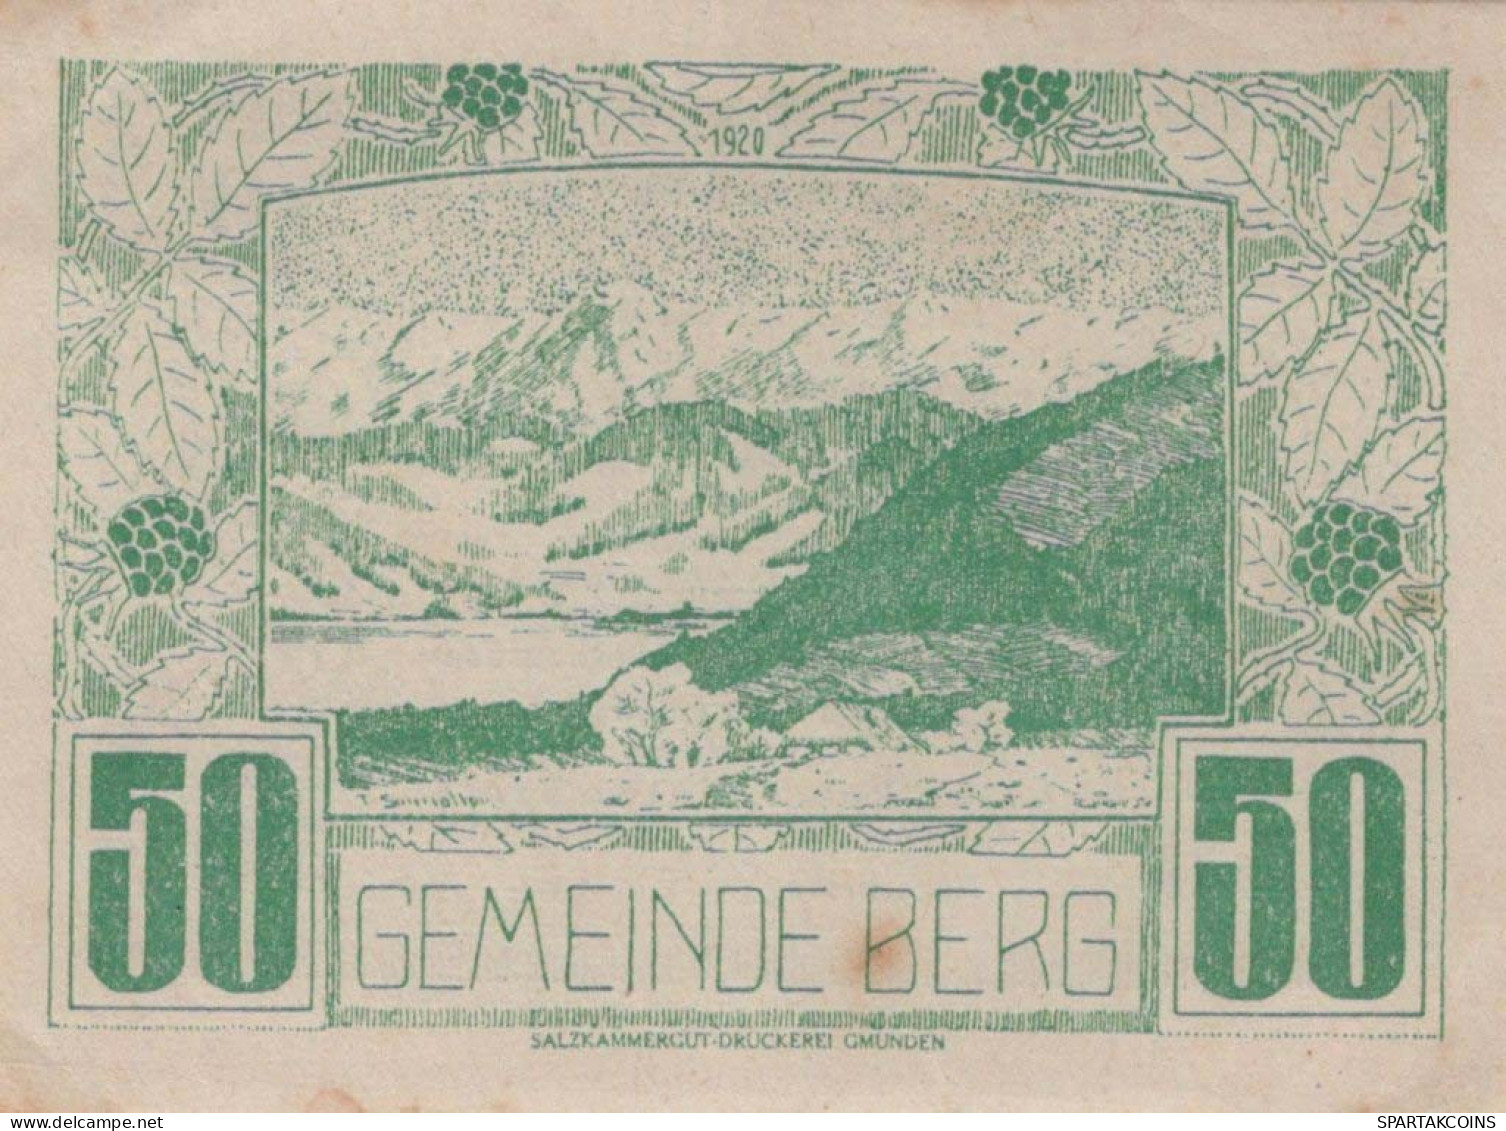 20 HELLER 1920 Stadt BERG IM ATTERGAU Oberösterreich Österreich Notgeld #PD752 - [11] Emisiones Locales